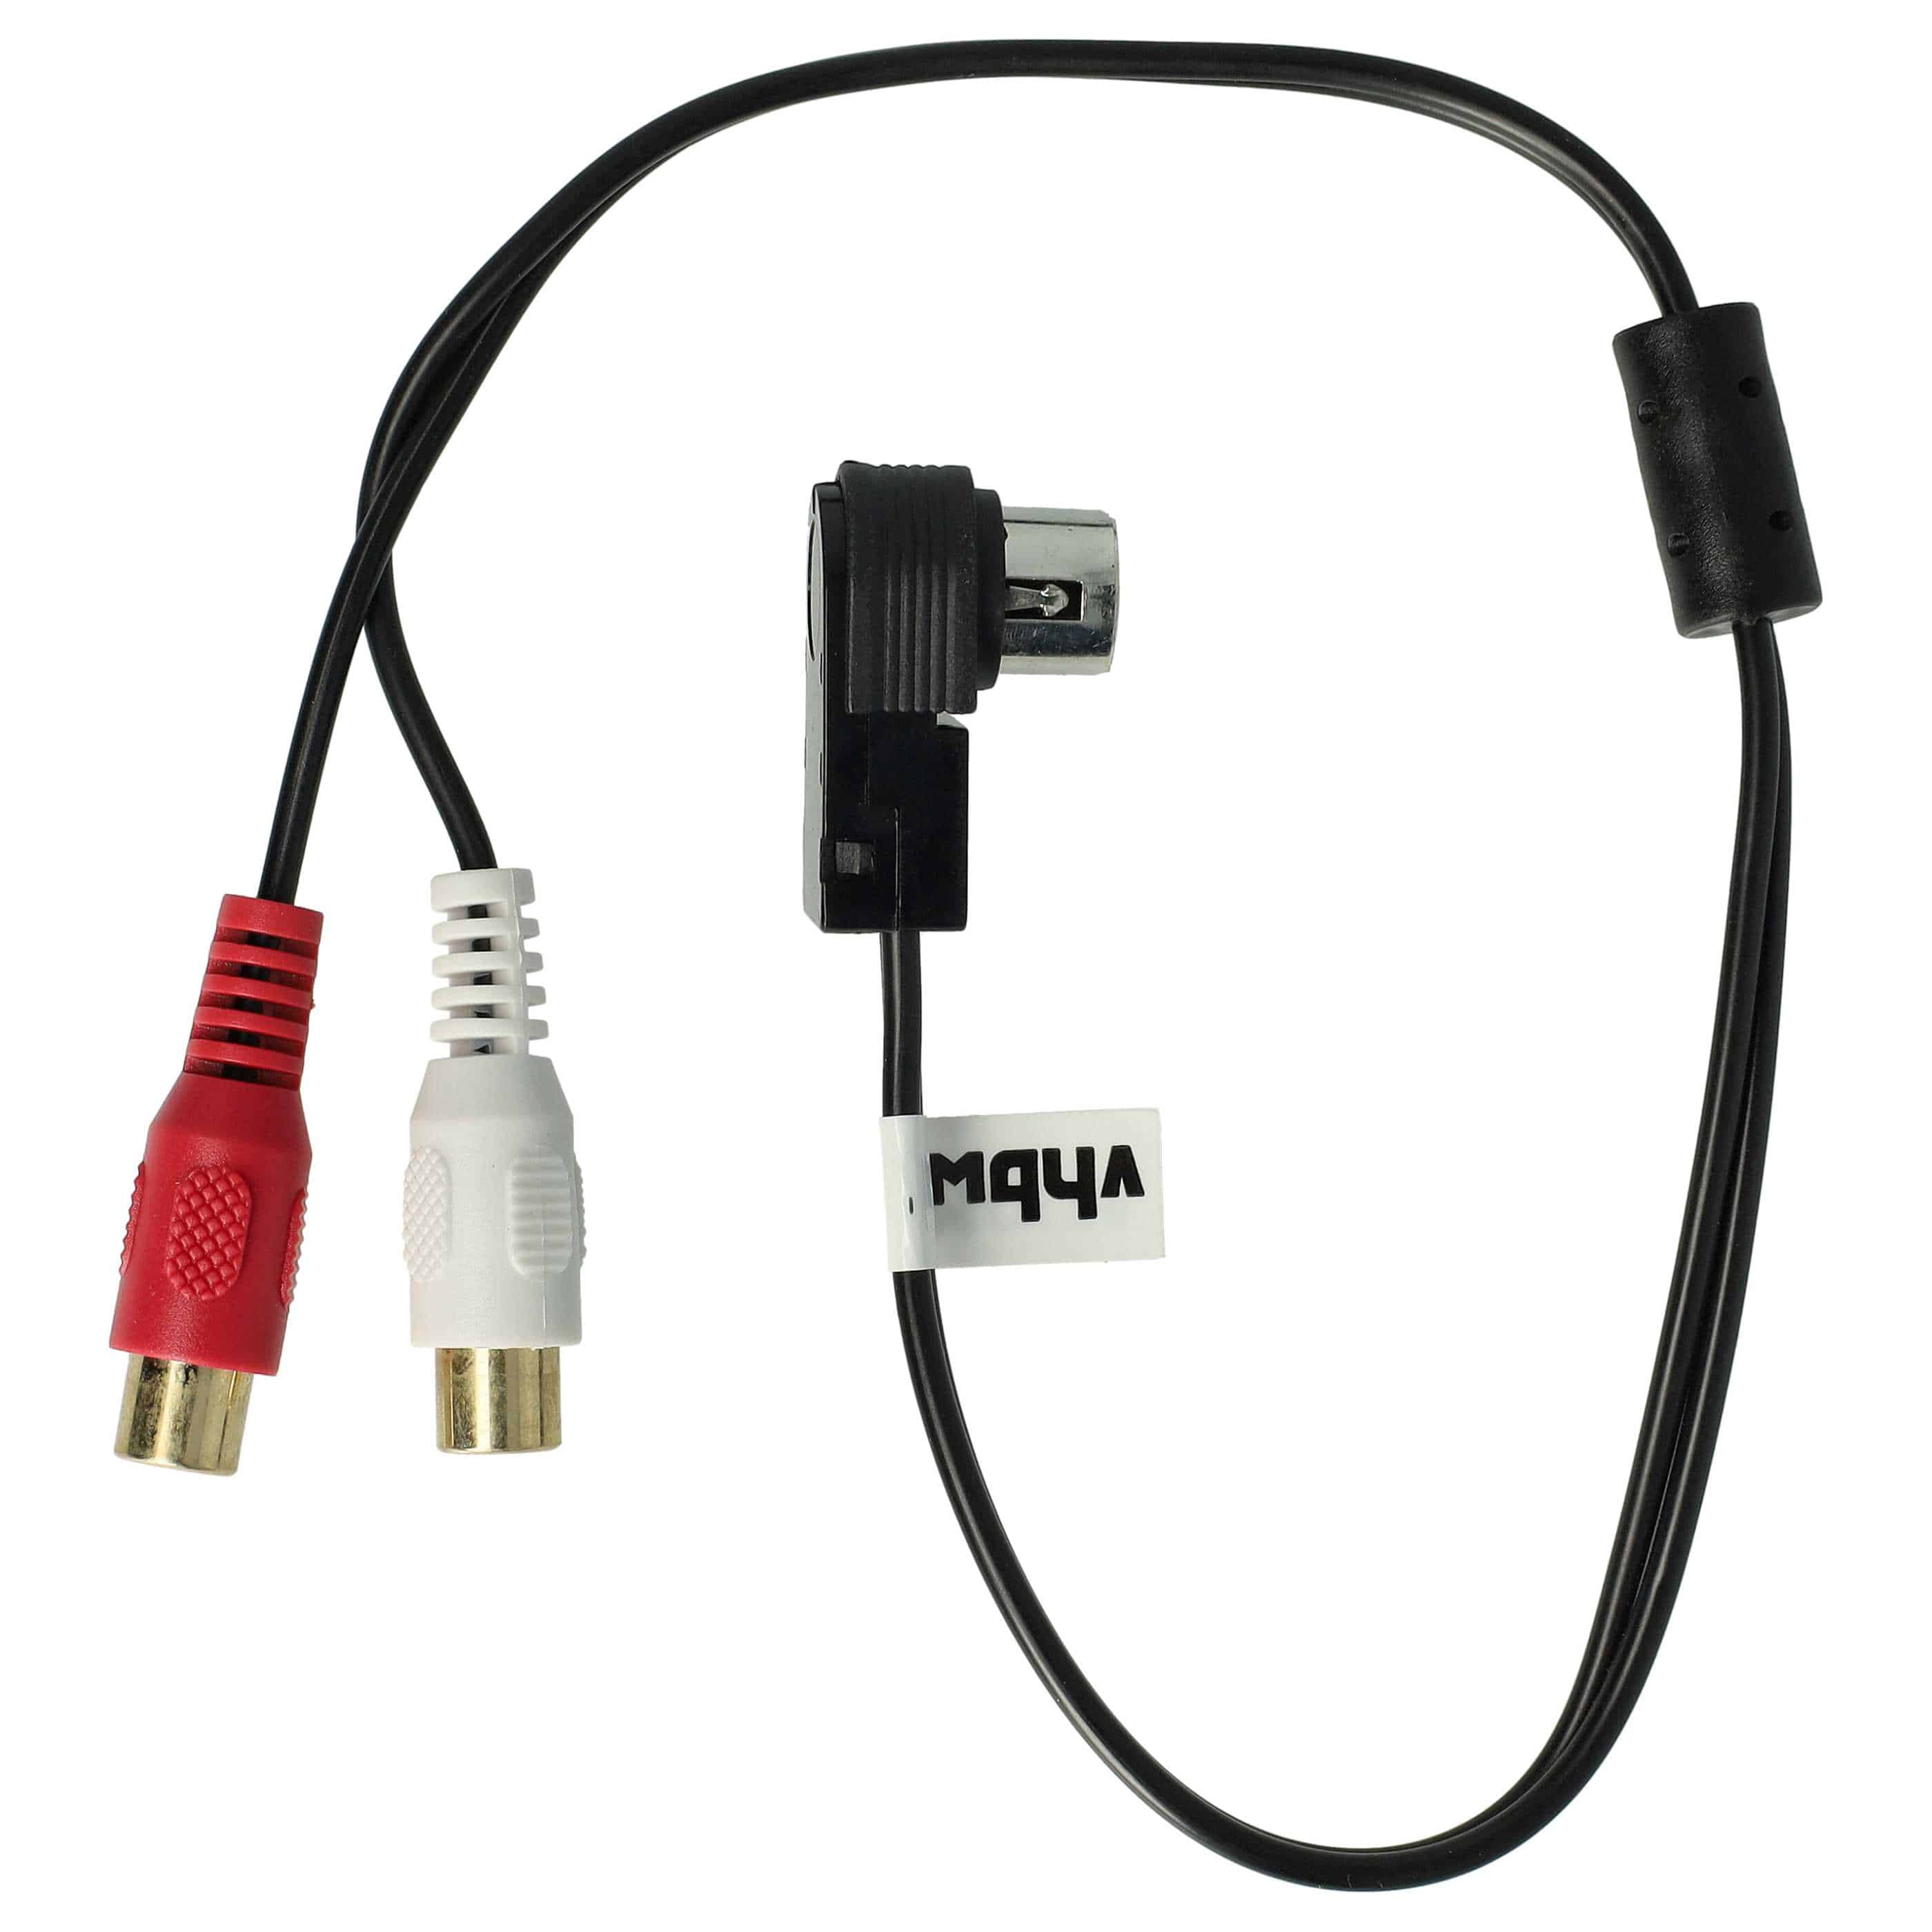 Audio Kabel als Ersatz für JVC / Alpine KCA-121B für Autoradio - 60 cm lang